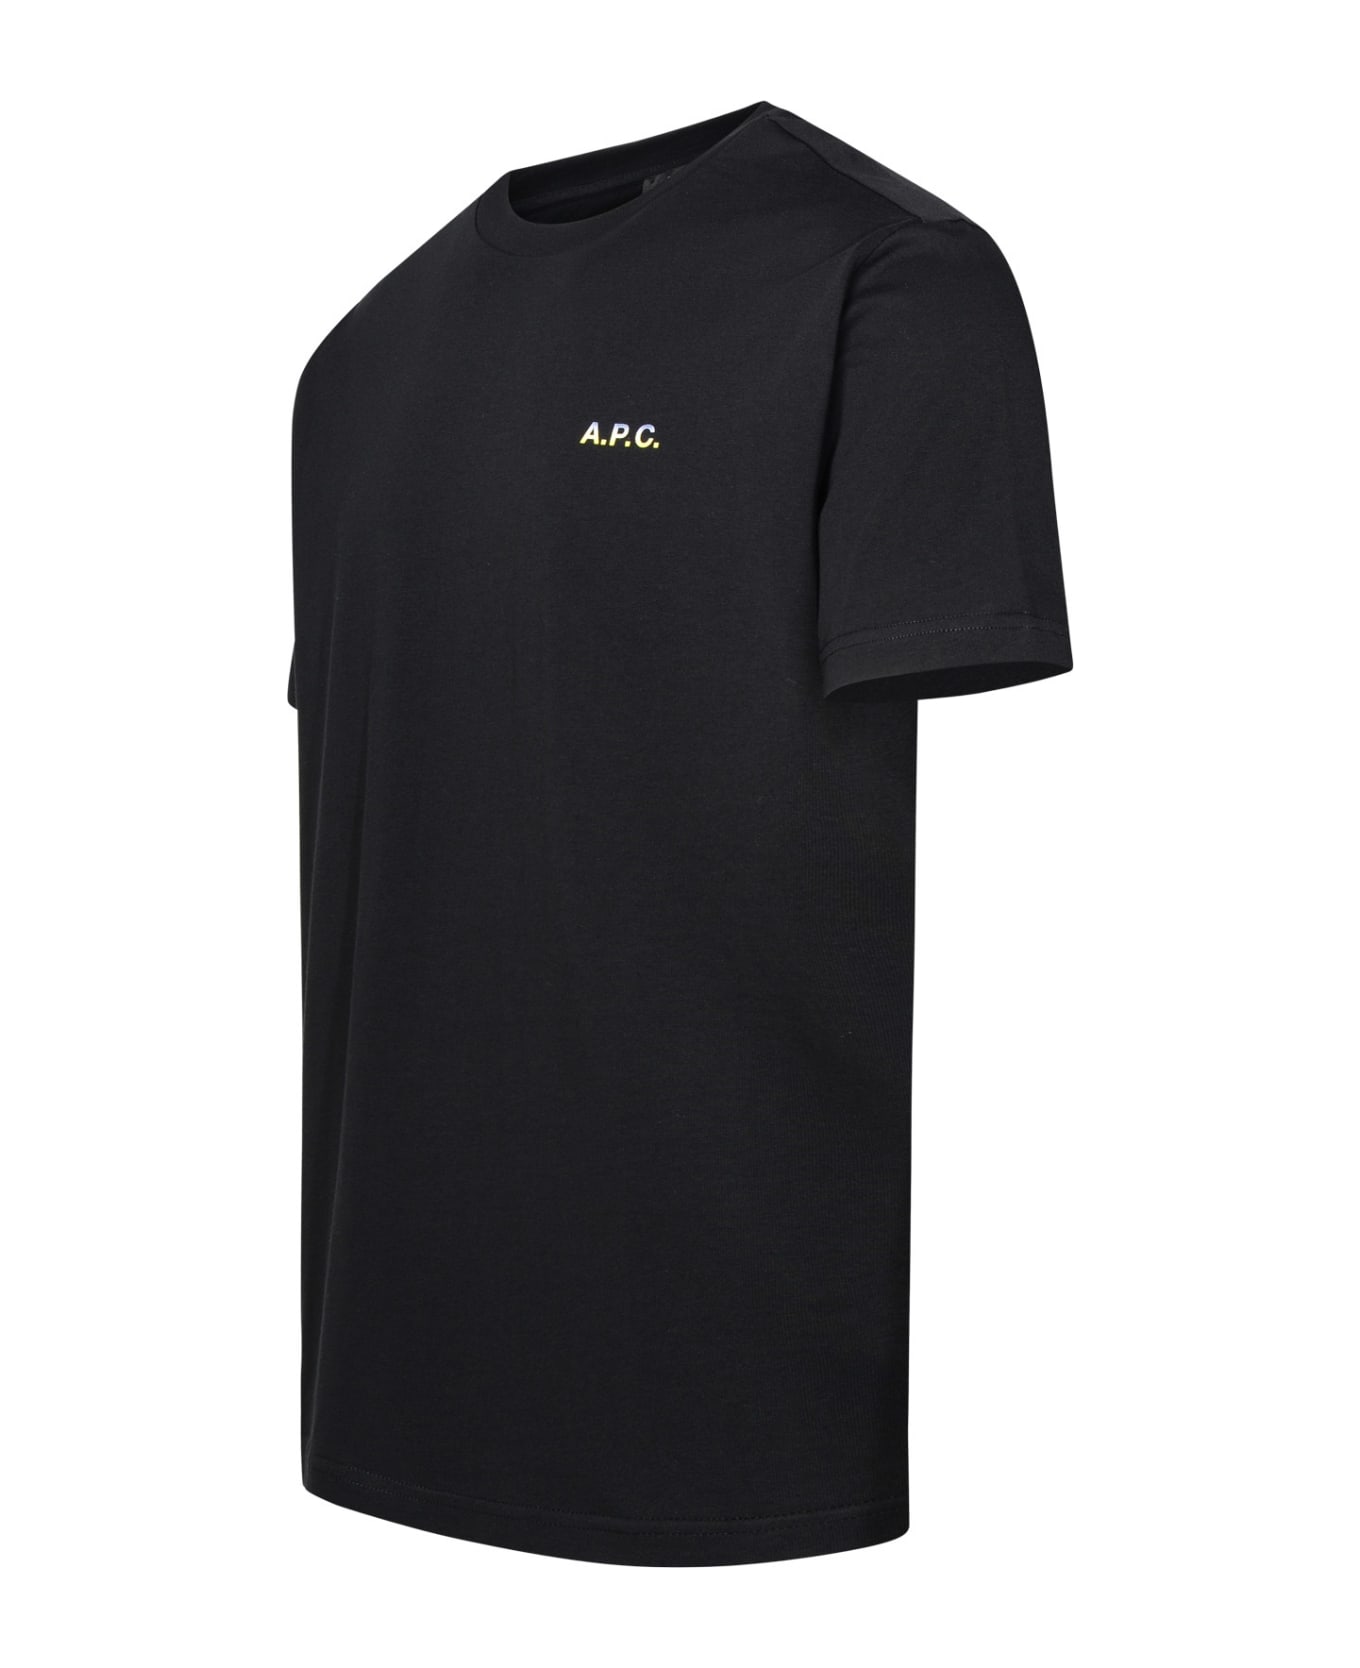 A.P.C. Black Cotton T-shirt - BLACK